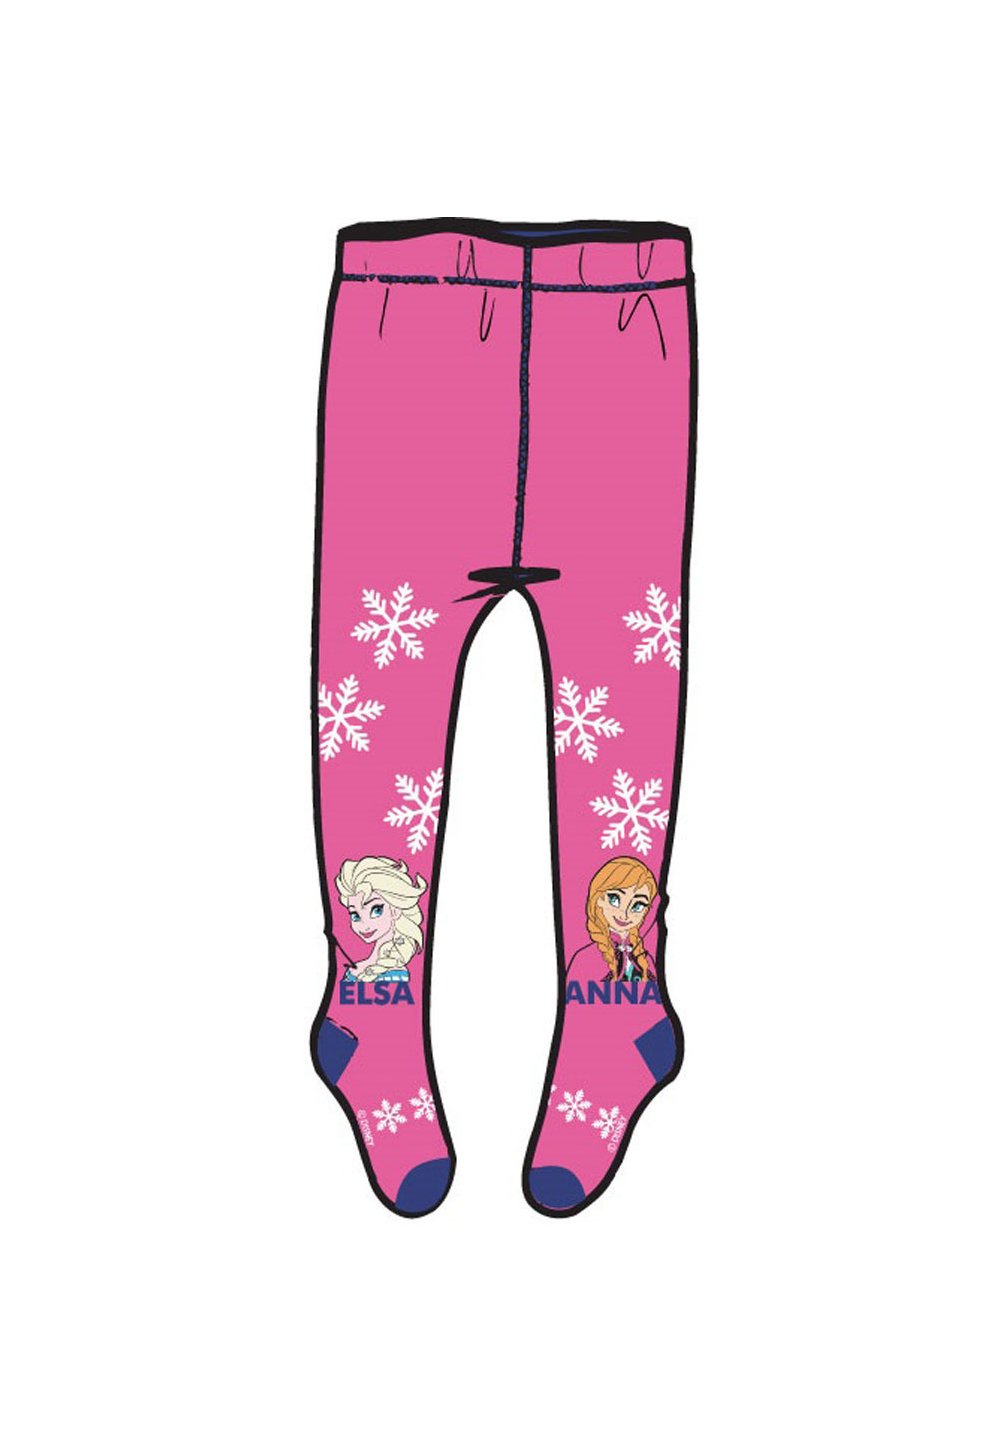 Ciorapi cu chilot, Anna si Elsa, roz cu fulgi imagine